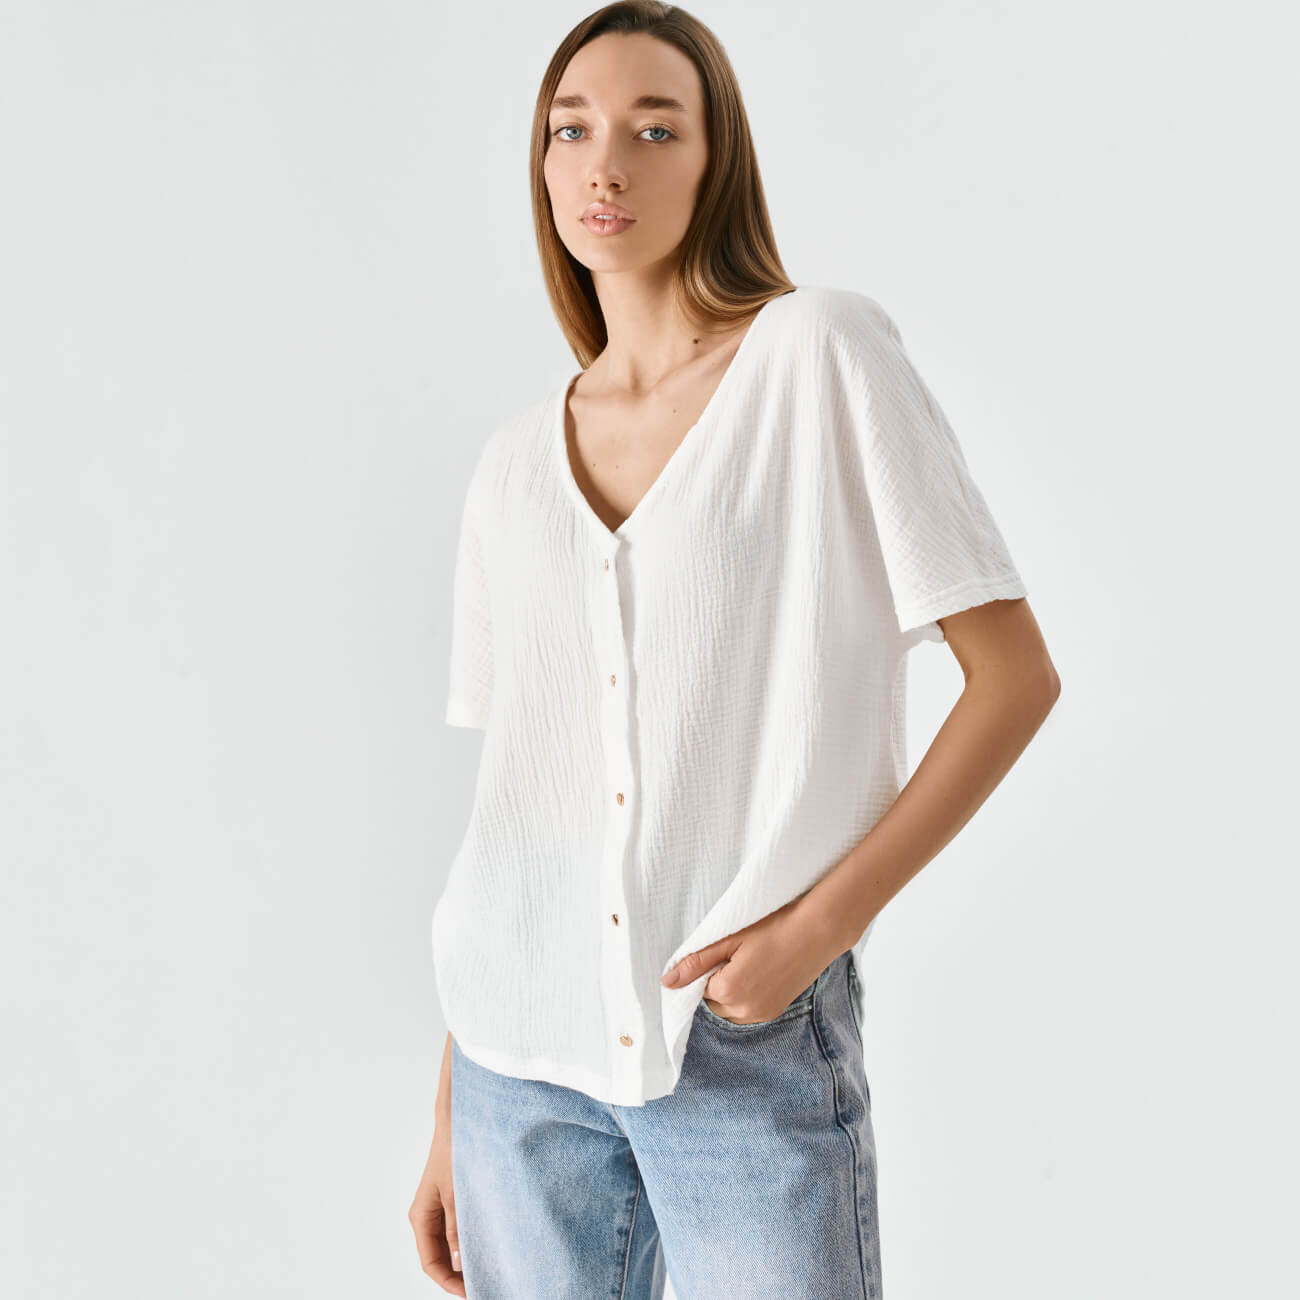 Рубашка женская, р. XL, с коротким рукавом, хлопок, белая, Allison - фото 1